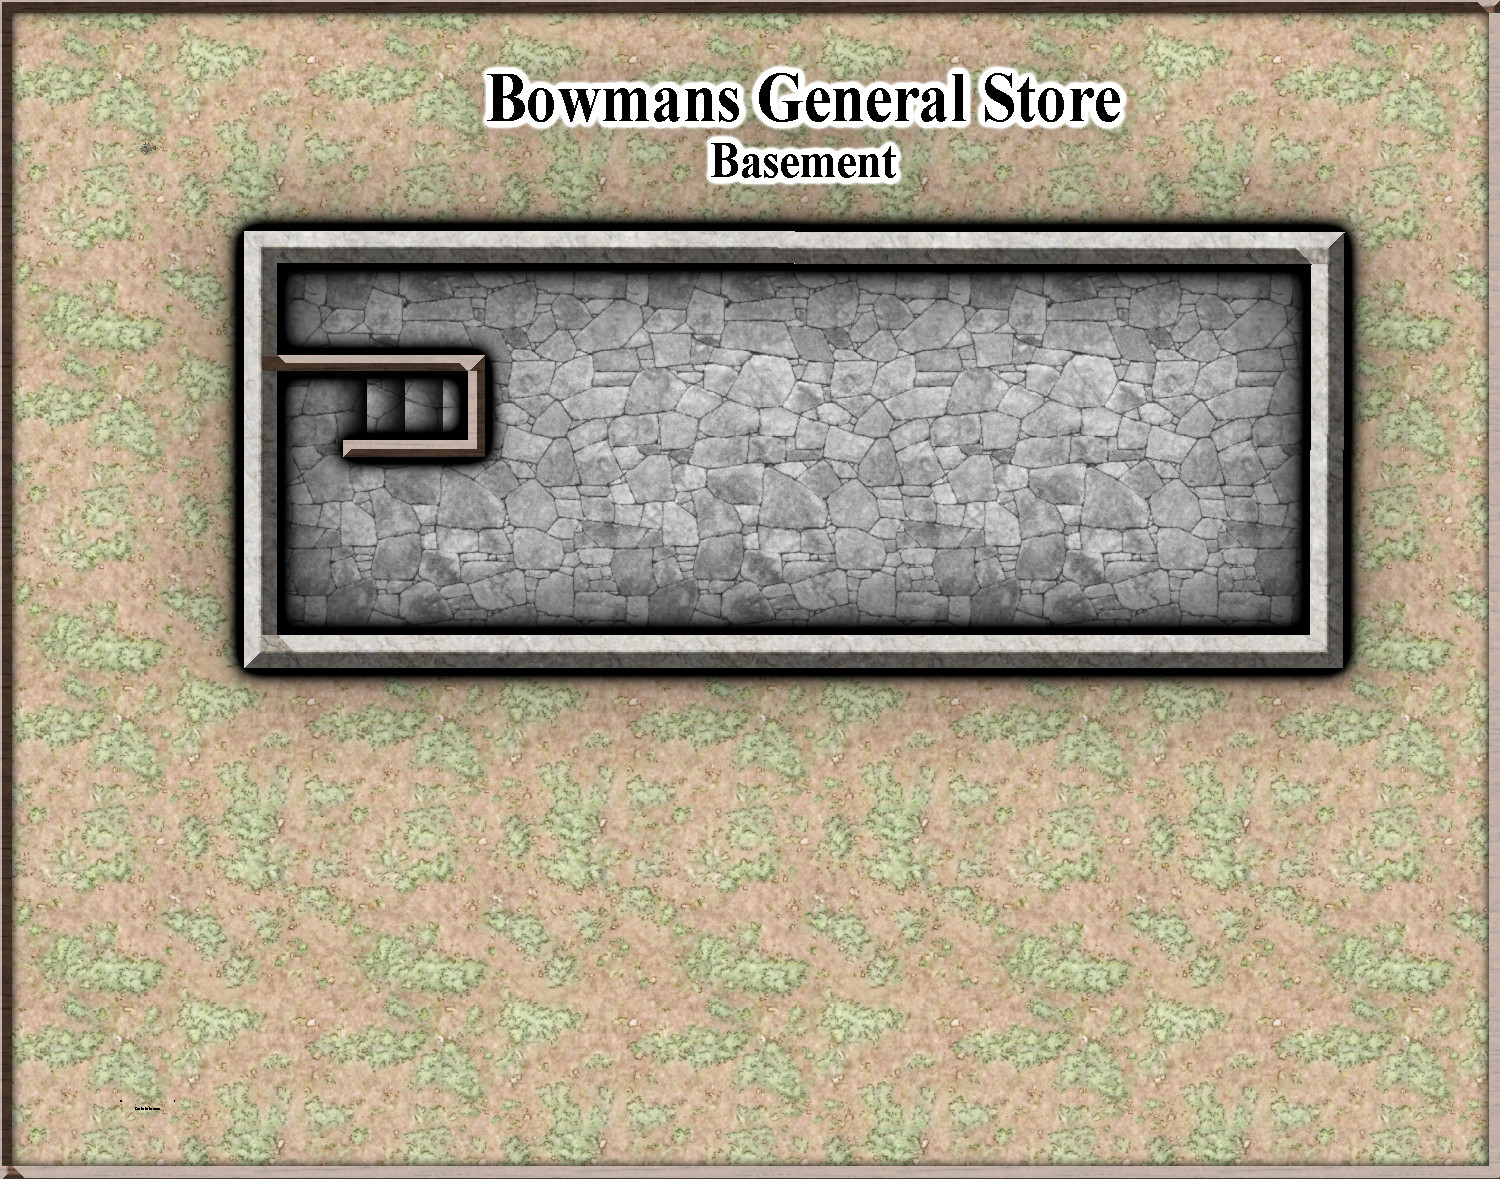 Bowmans General Store_Basement.JPG